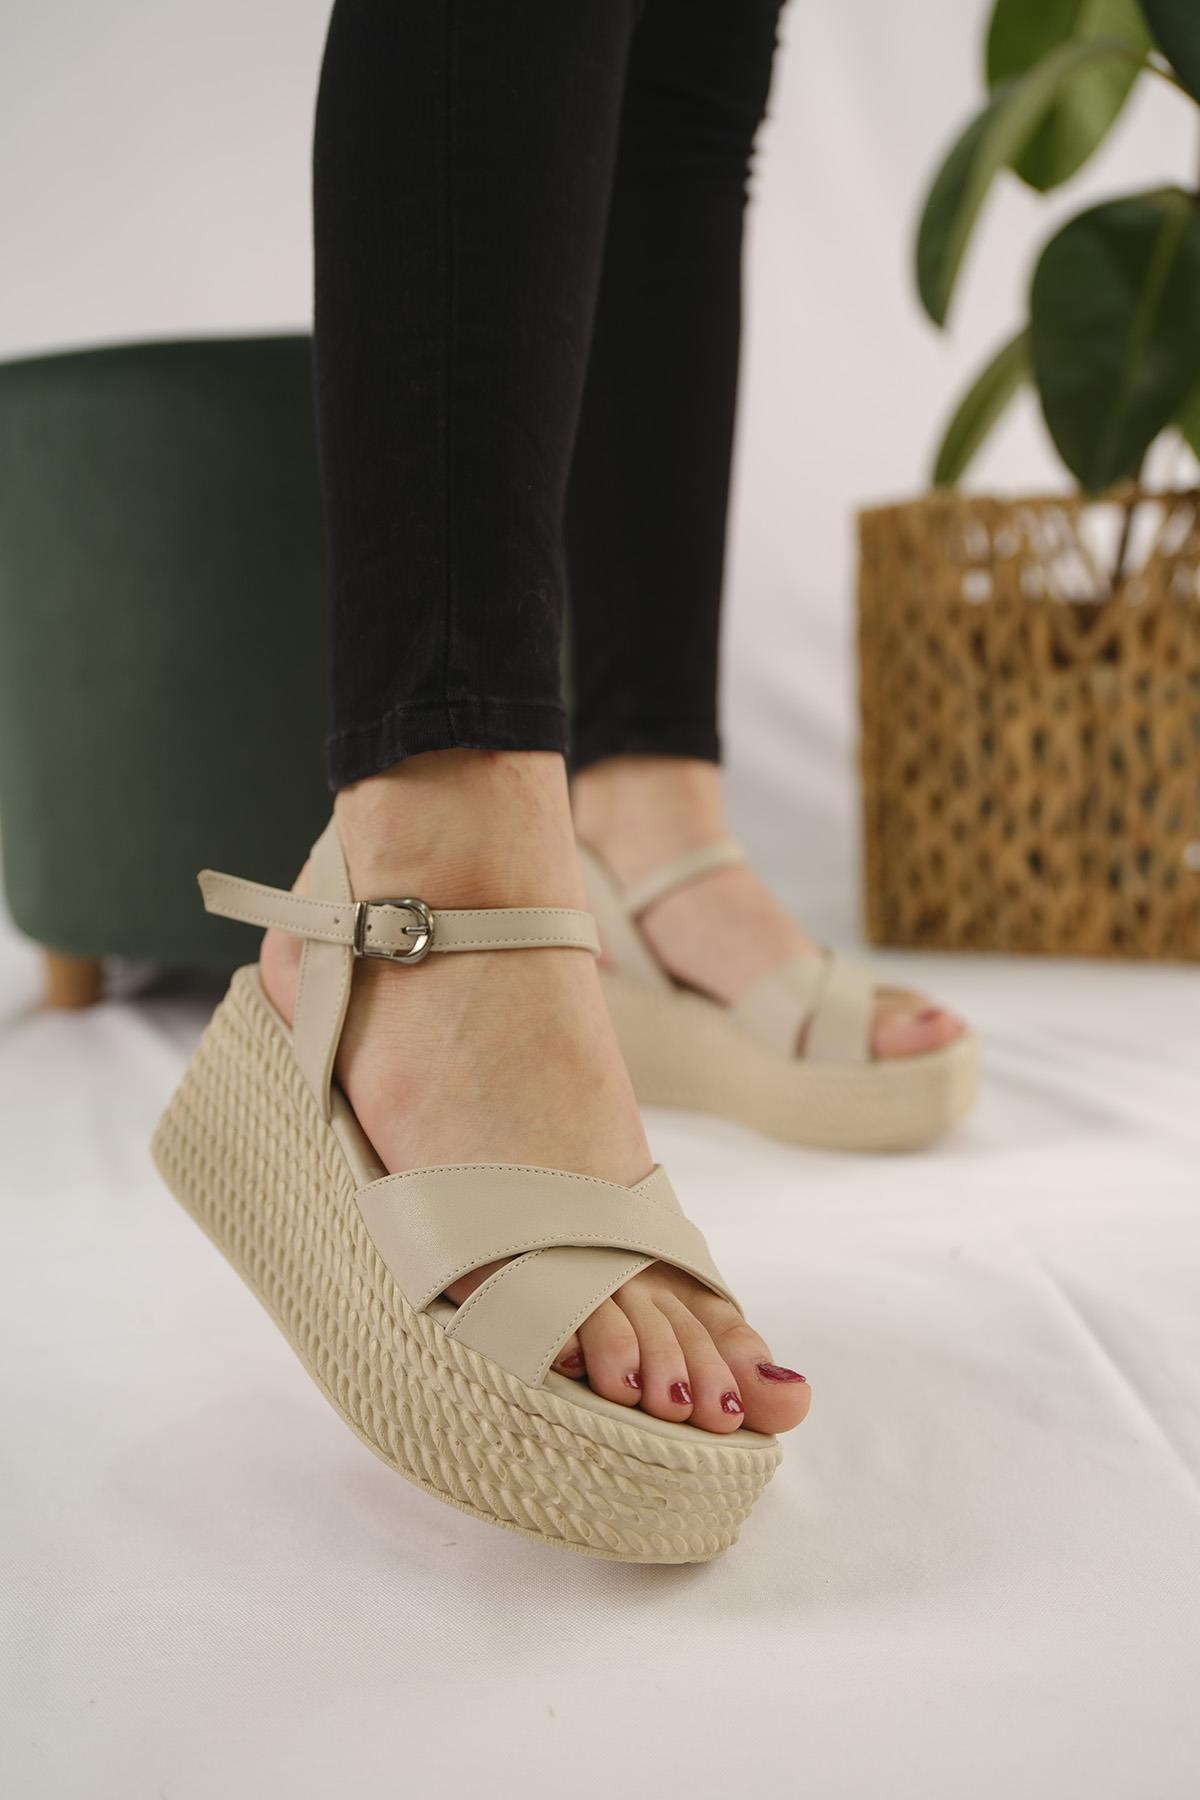 Ava Hasır Görünmlü Yüksek Taban Dolgu Topuk Kadın Sandalet TAS - Oksit